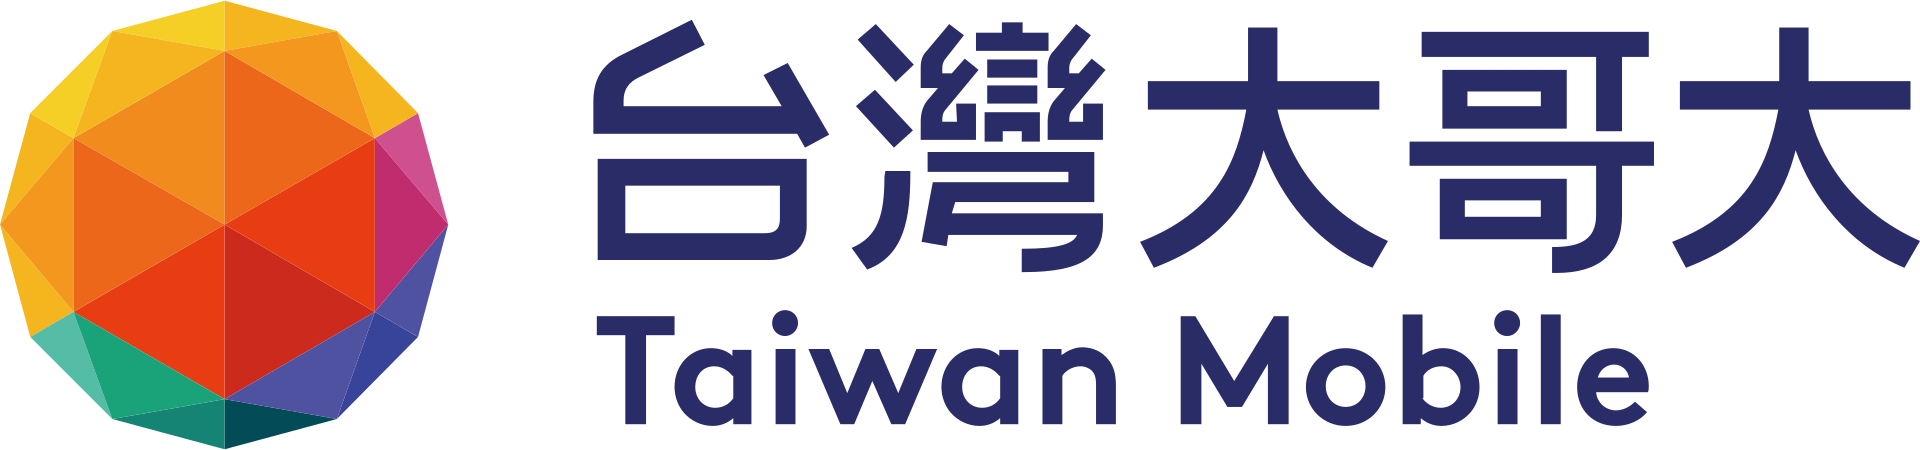 台灣大哥大股份有限公司 (Taiwan Mobile Co., Ltd.)